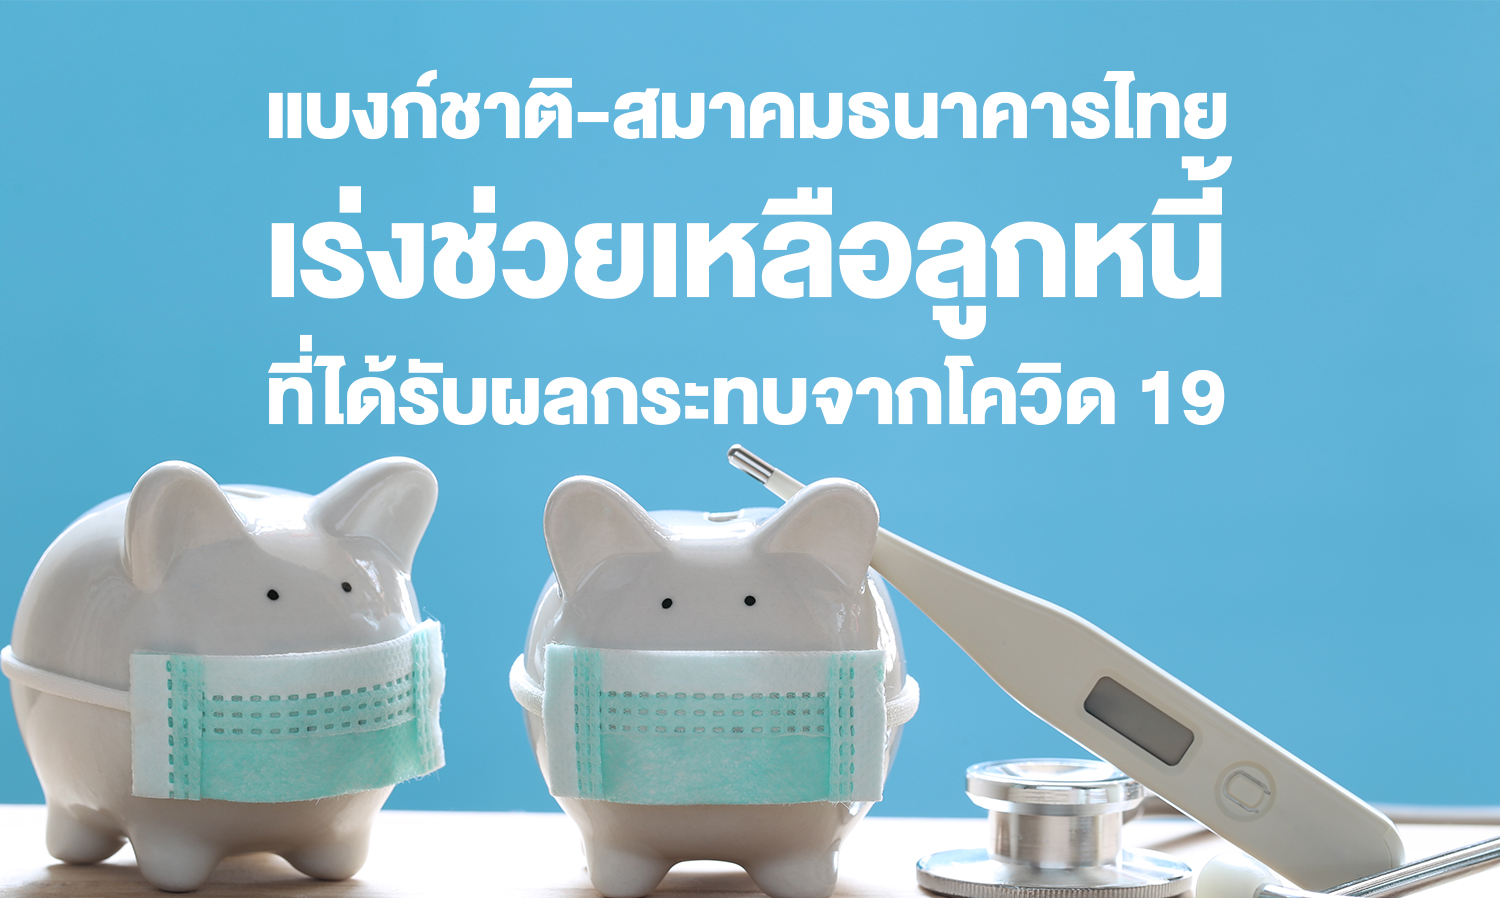 แบงก์ชาติ-สมาคมธนาคารไทย  เร่งช่วยเหลือลูกหนี้ที่ได้รับผลกระทบจากโควิด 19